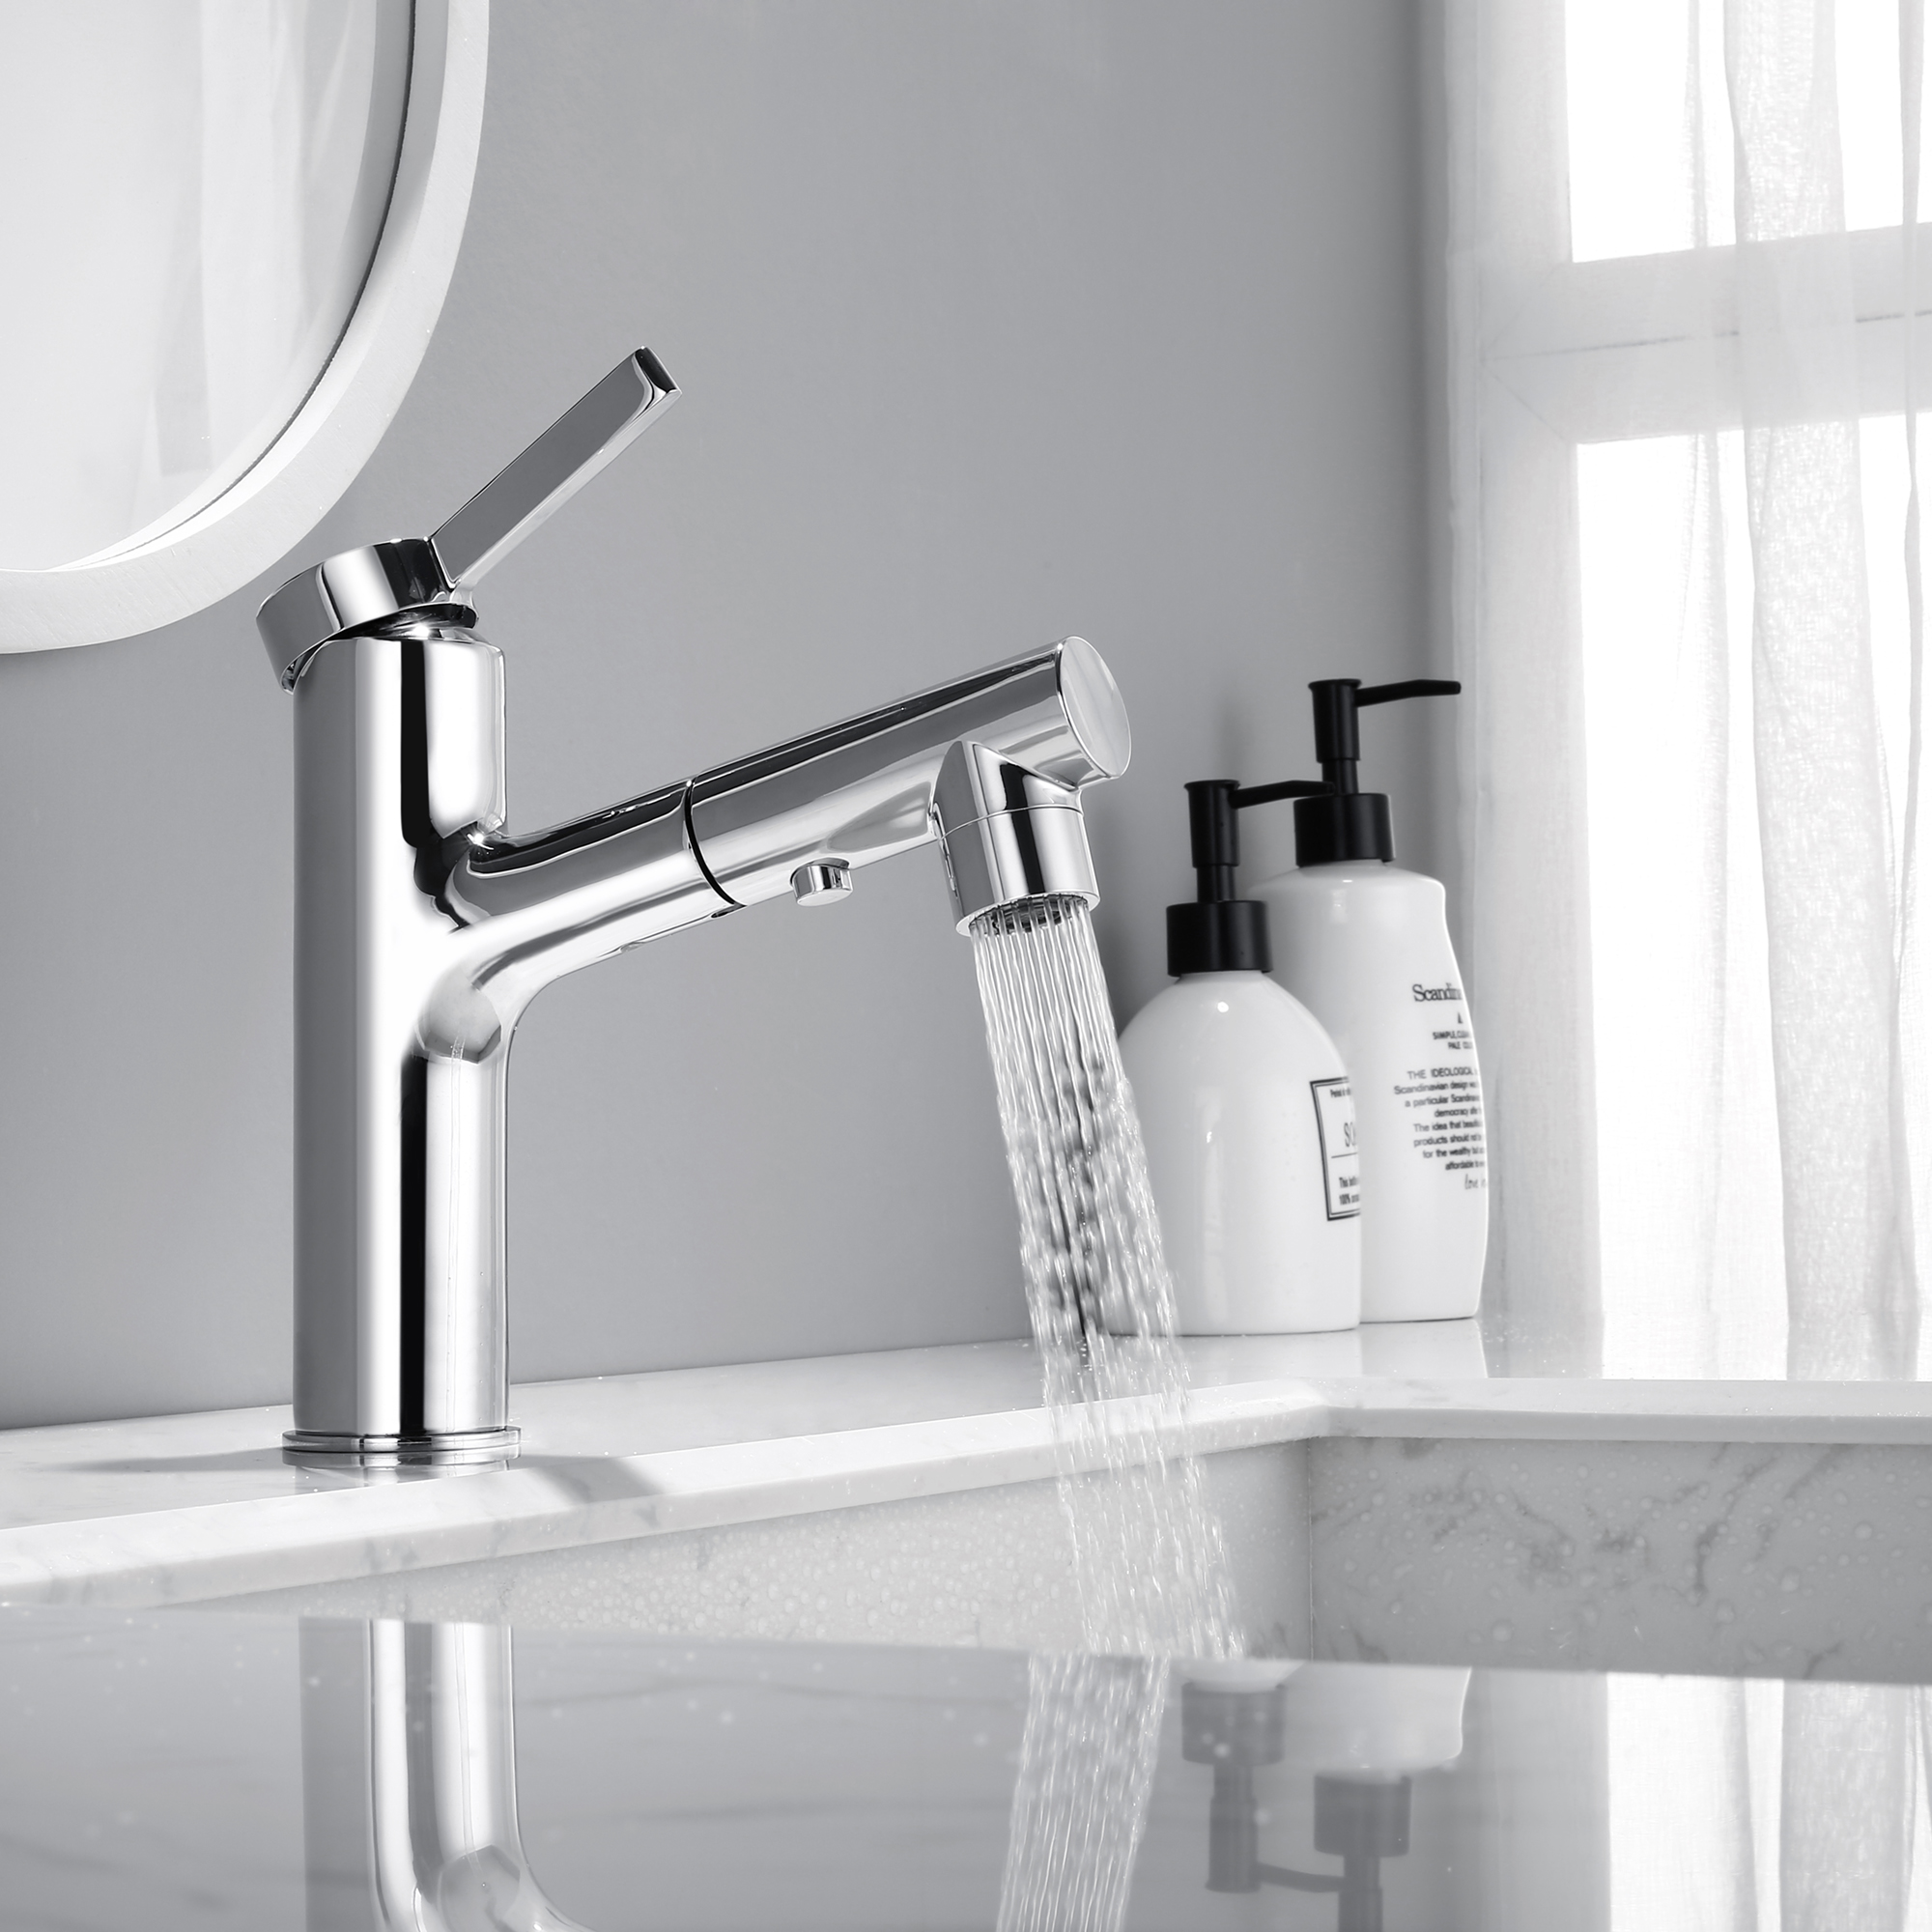 Brass Luxury Bathroom Basin Chrome Pull Out Spray Basin Faucet 